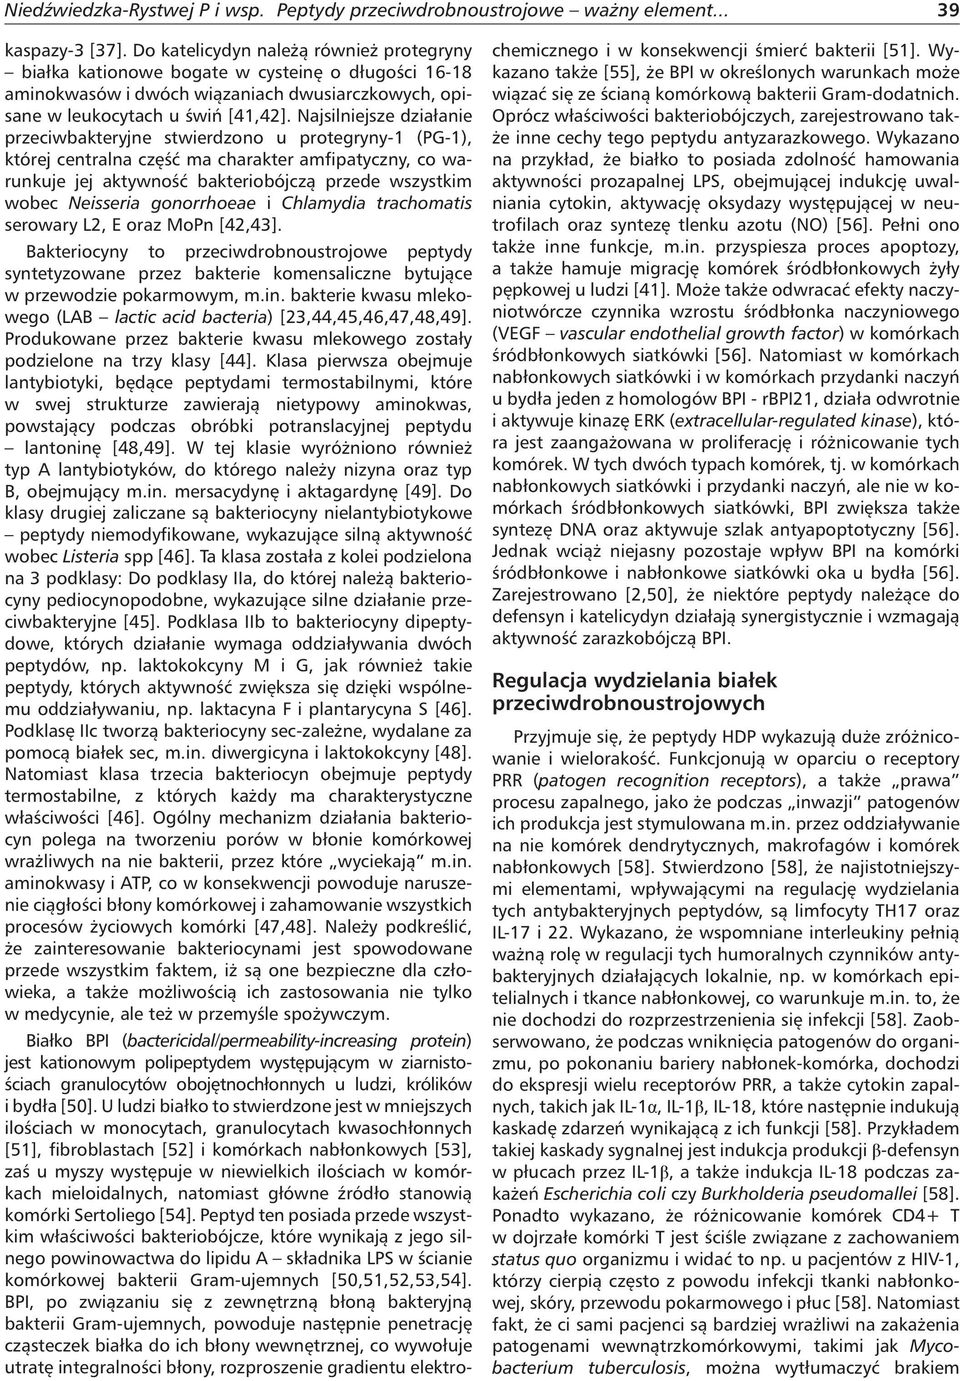 Neisseria gonorrhoeae i Chlamydia trachomatis serowary L2, E oraz MoPn [42,43].